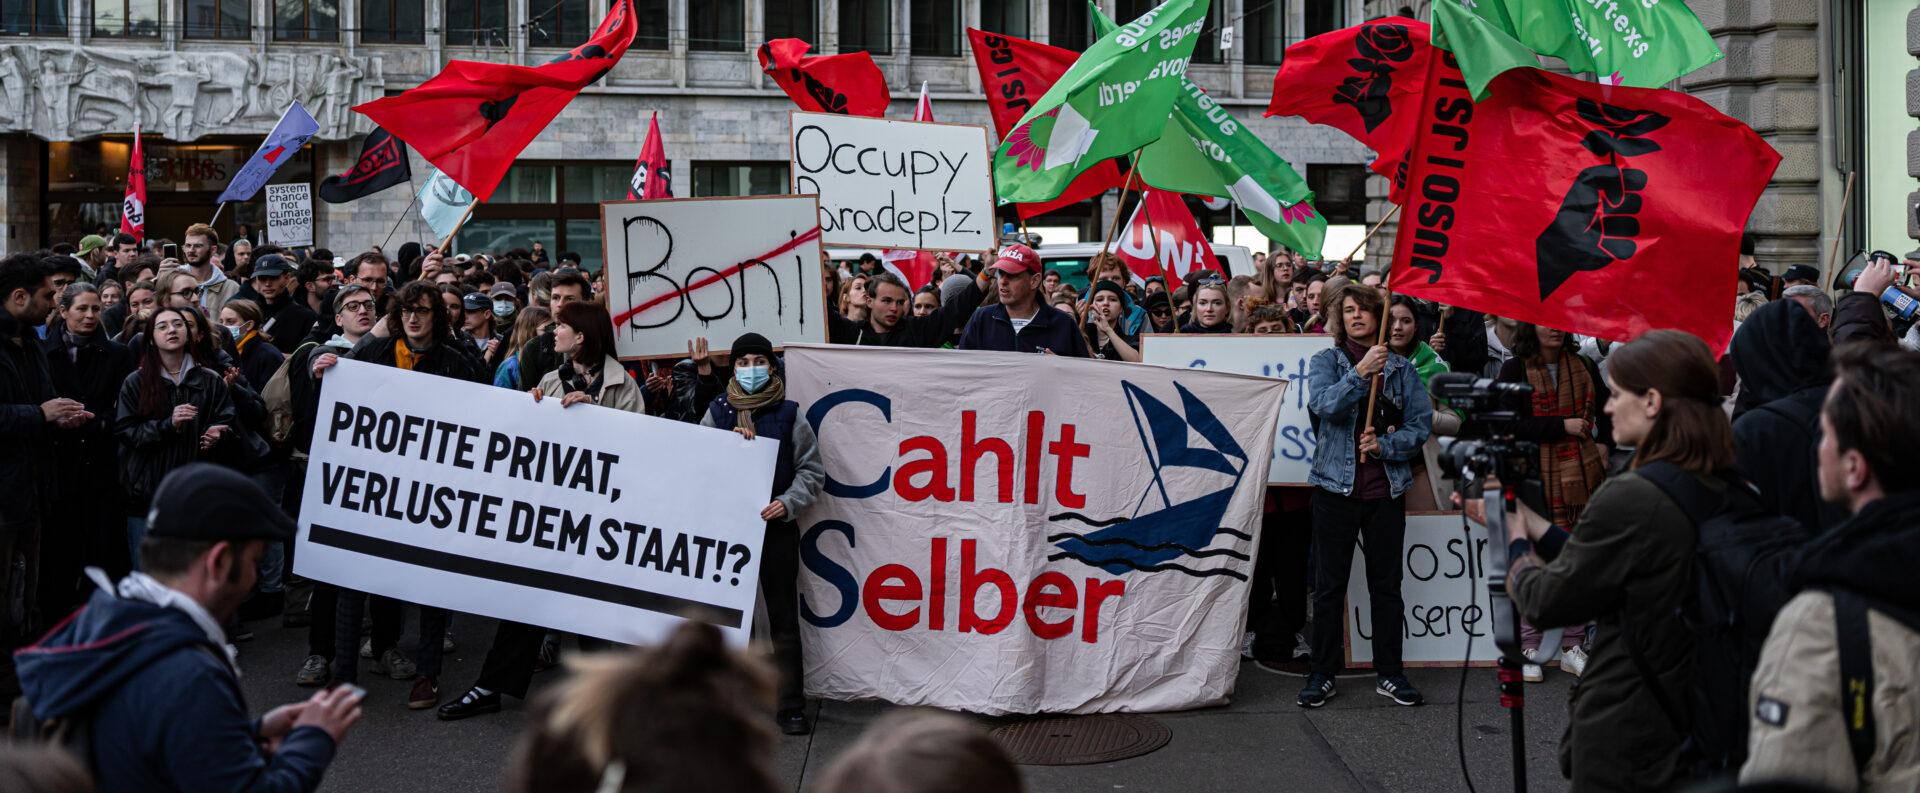 La débâcle de Crédit suisse a provoqué des réactions indignées dans le public | photo: manifestation à Zurich, le 20 mars 2023 © Gianluca Imbiscuso/Flickr/CC BY-ND 2.0